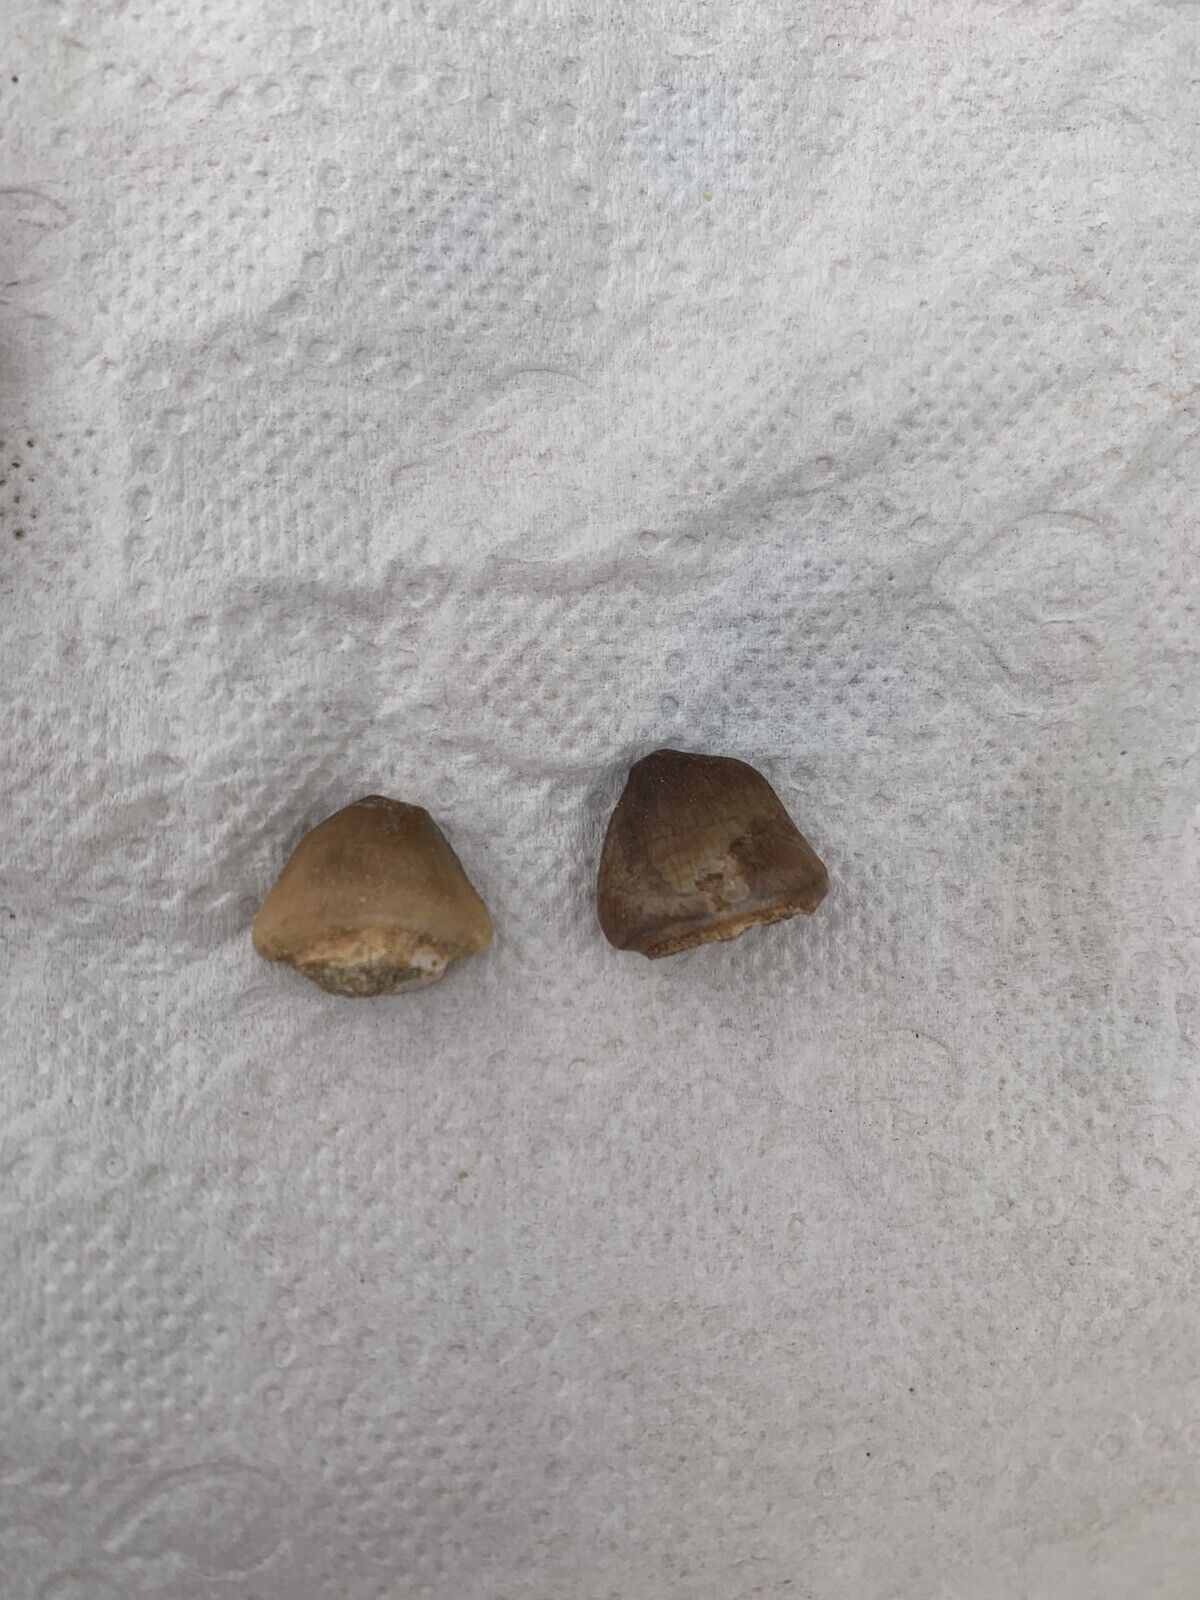 2 Extra rare Carinodens belgicus Tooth A Prehistoric Predator's Relic, VERY RARE